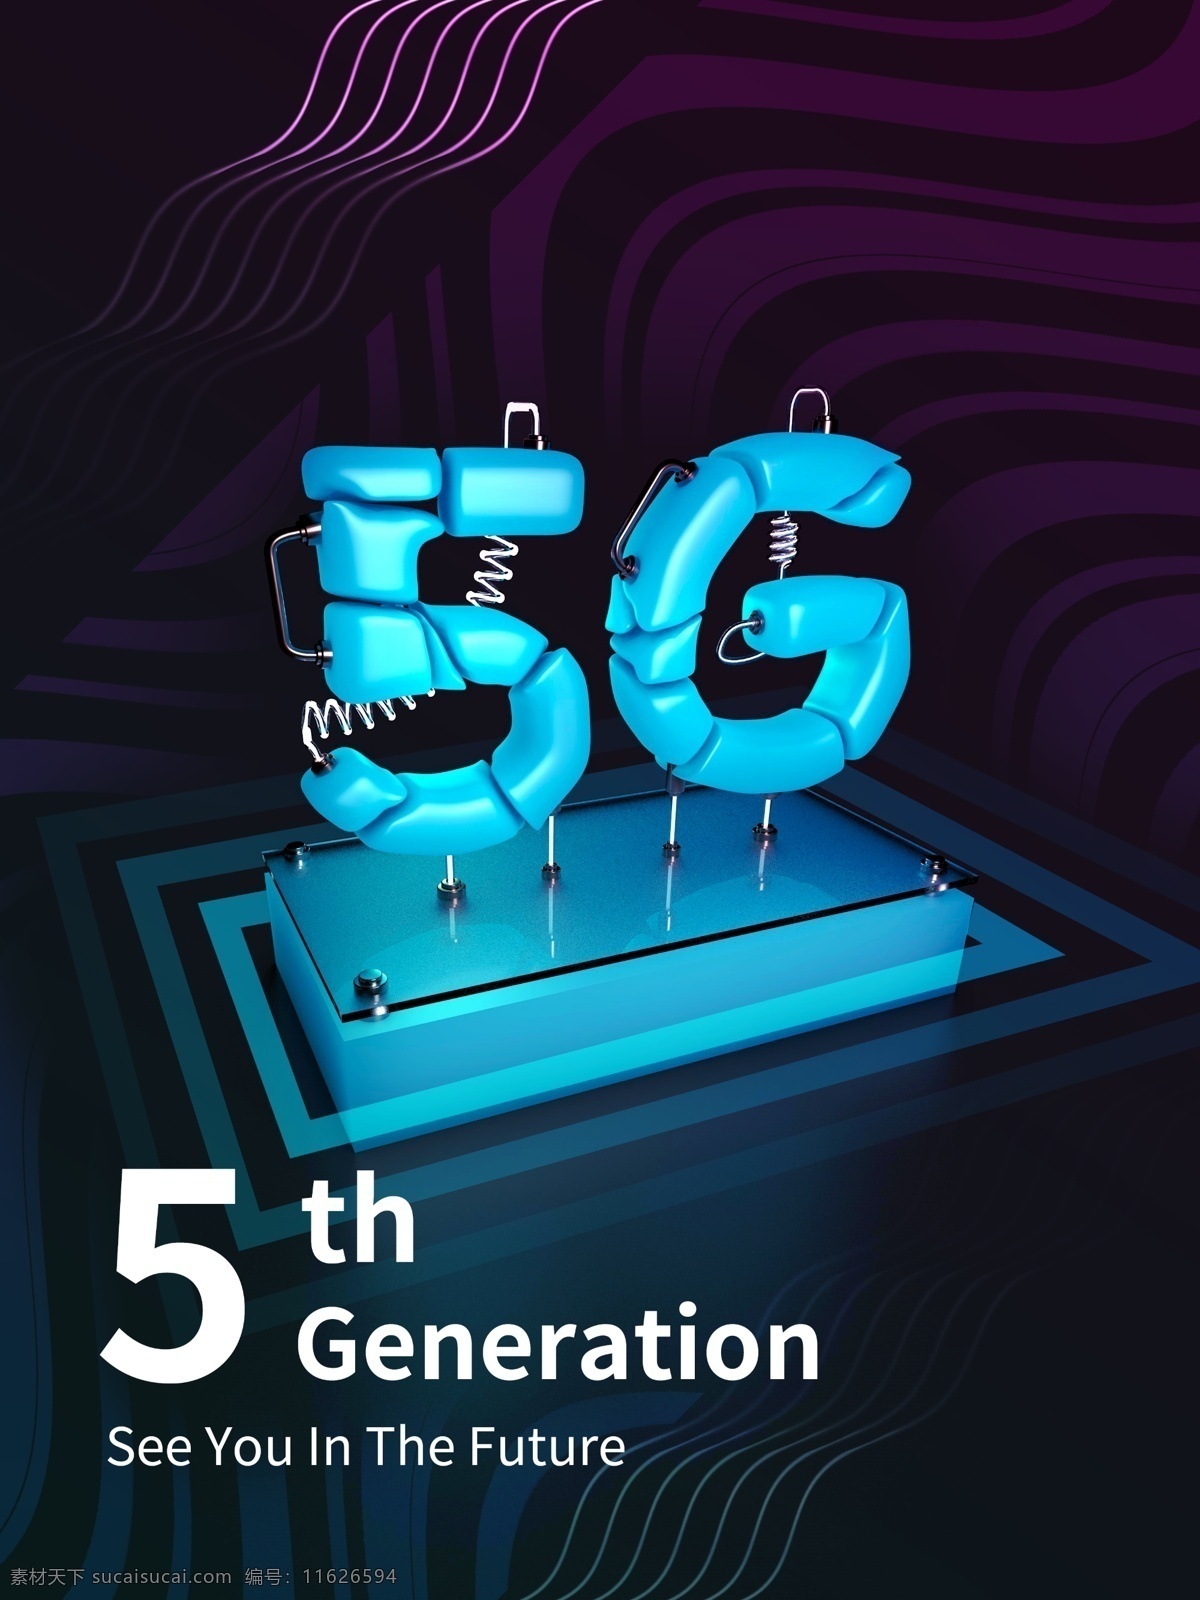 5g海报 5g 5g手机 5g通讯 5g科技 5g网络 5g技术 5g广告 5g通信 5g时代 网络通信 5g展板 科技 科技环保 通信技术 移动通信 手机科技 手